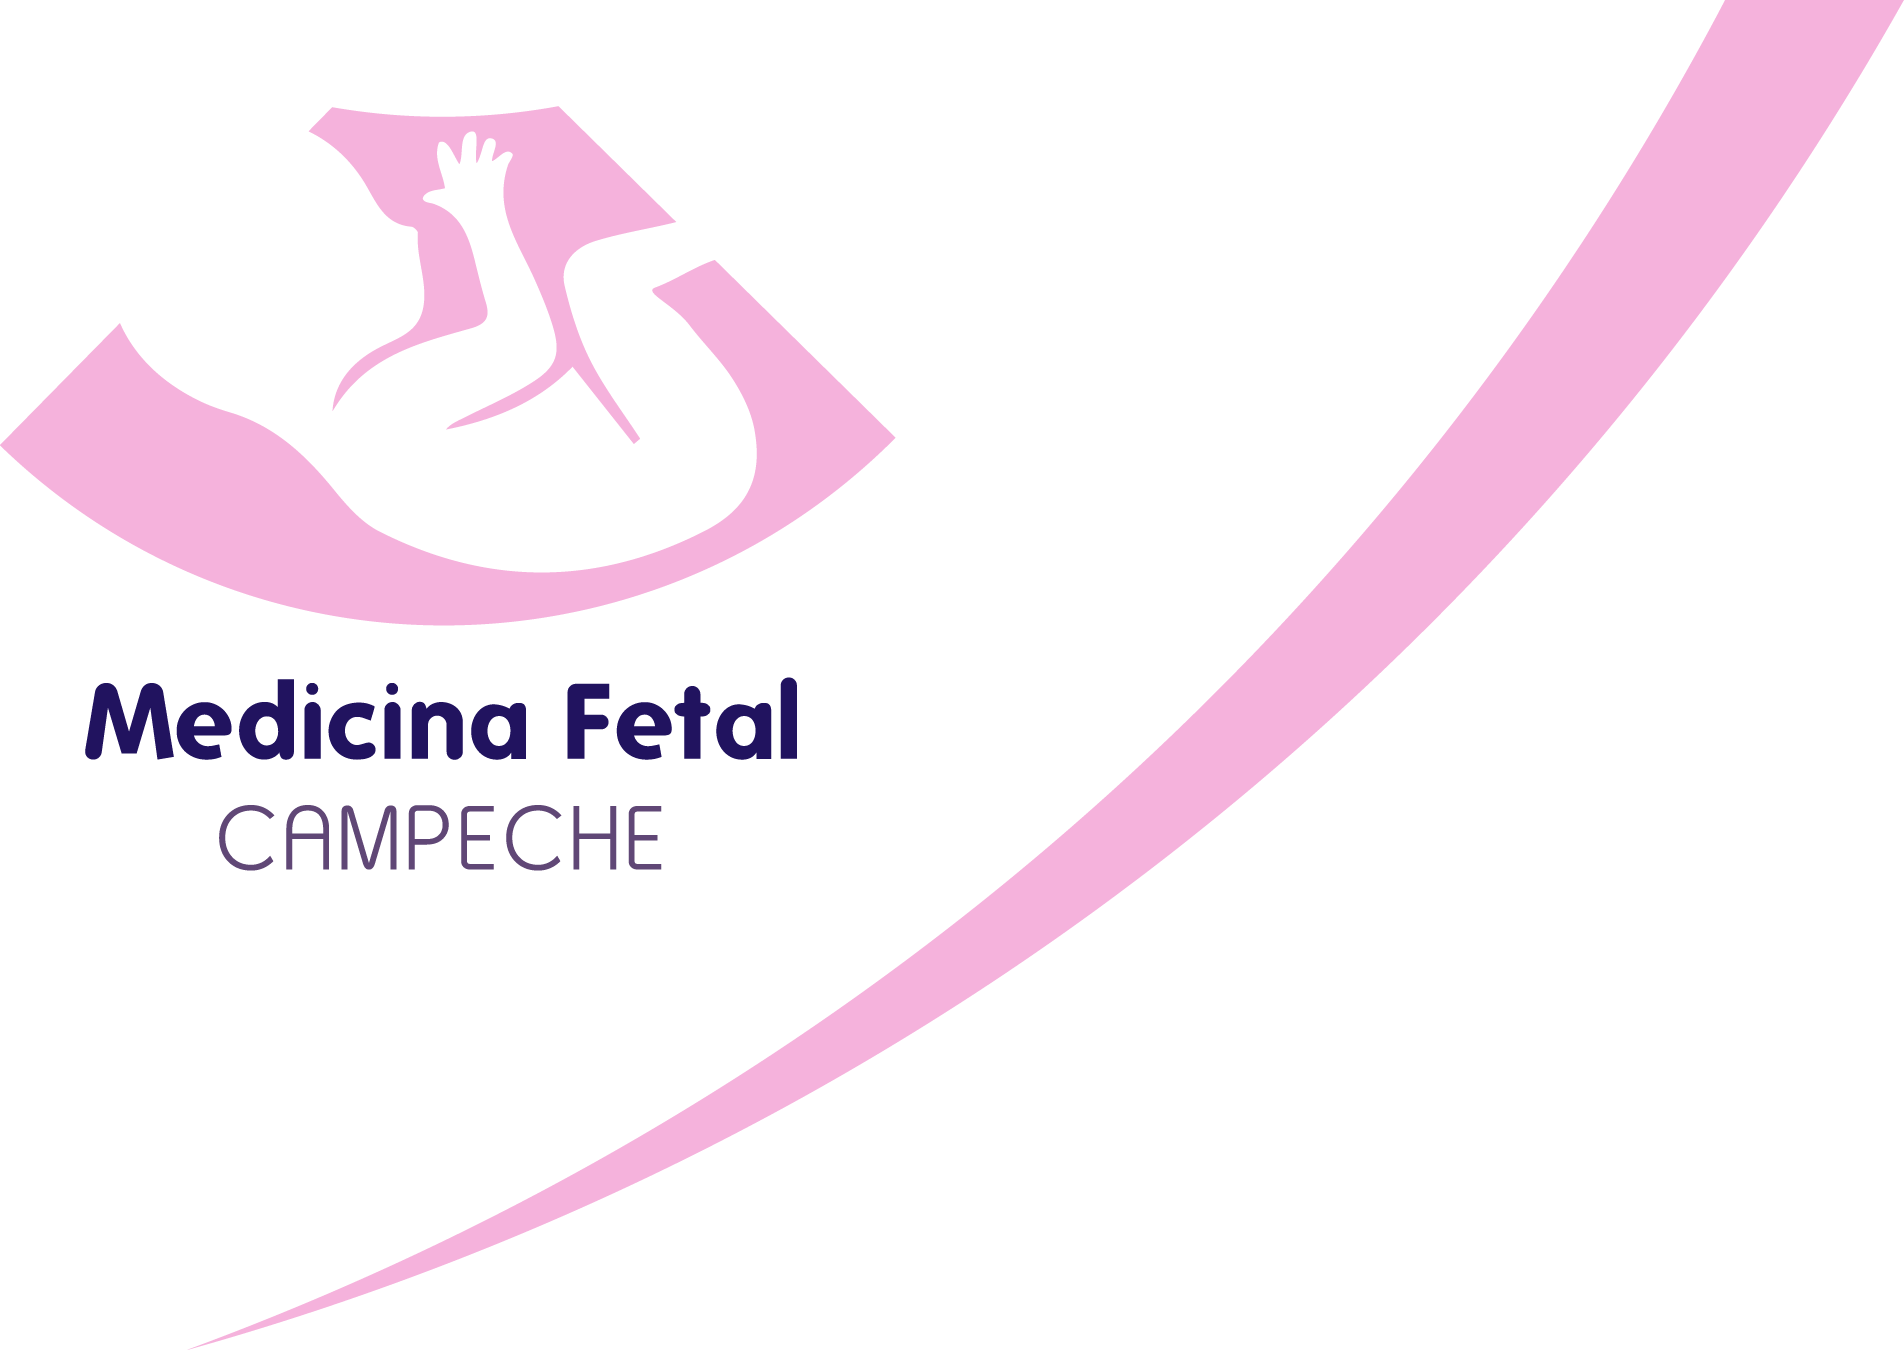 Medicina Fetal Campeche